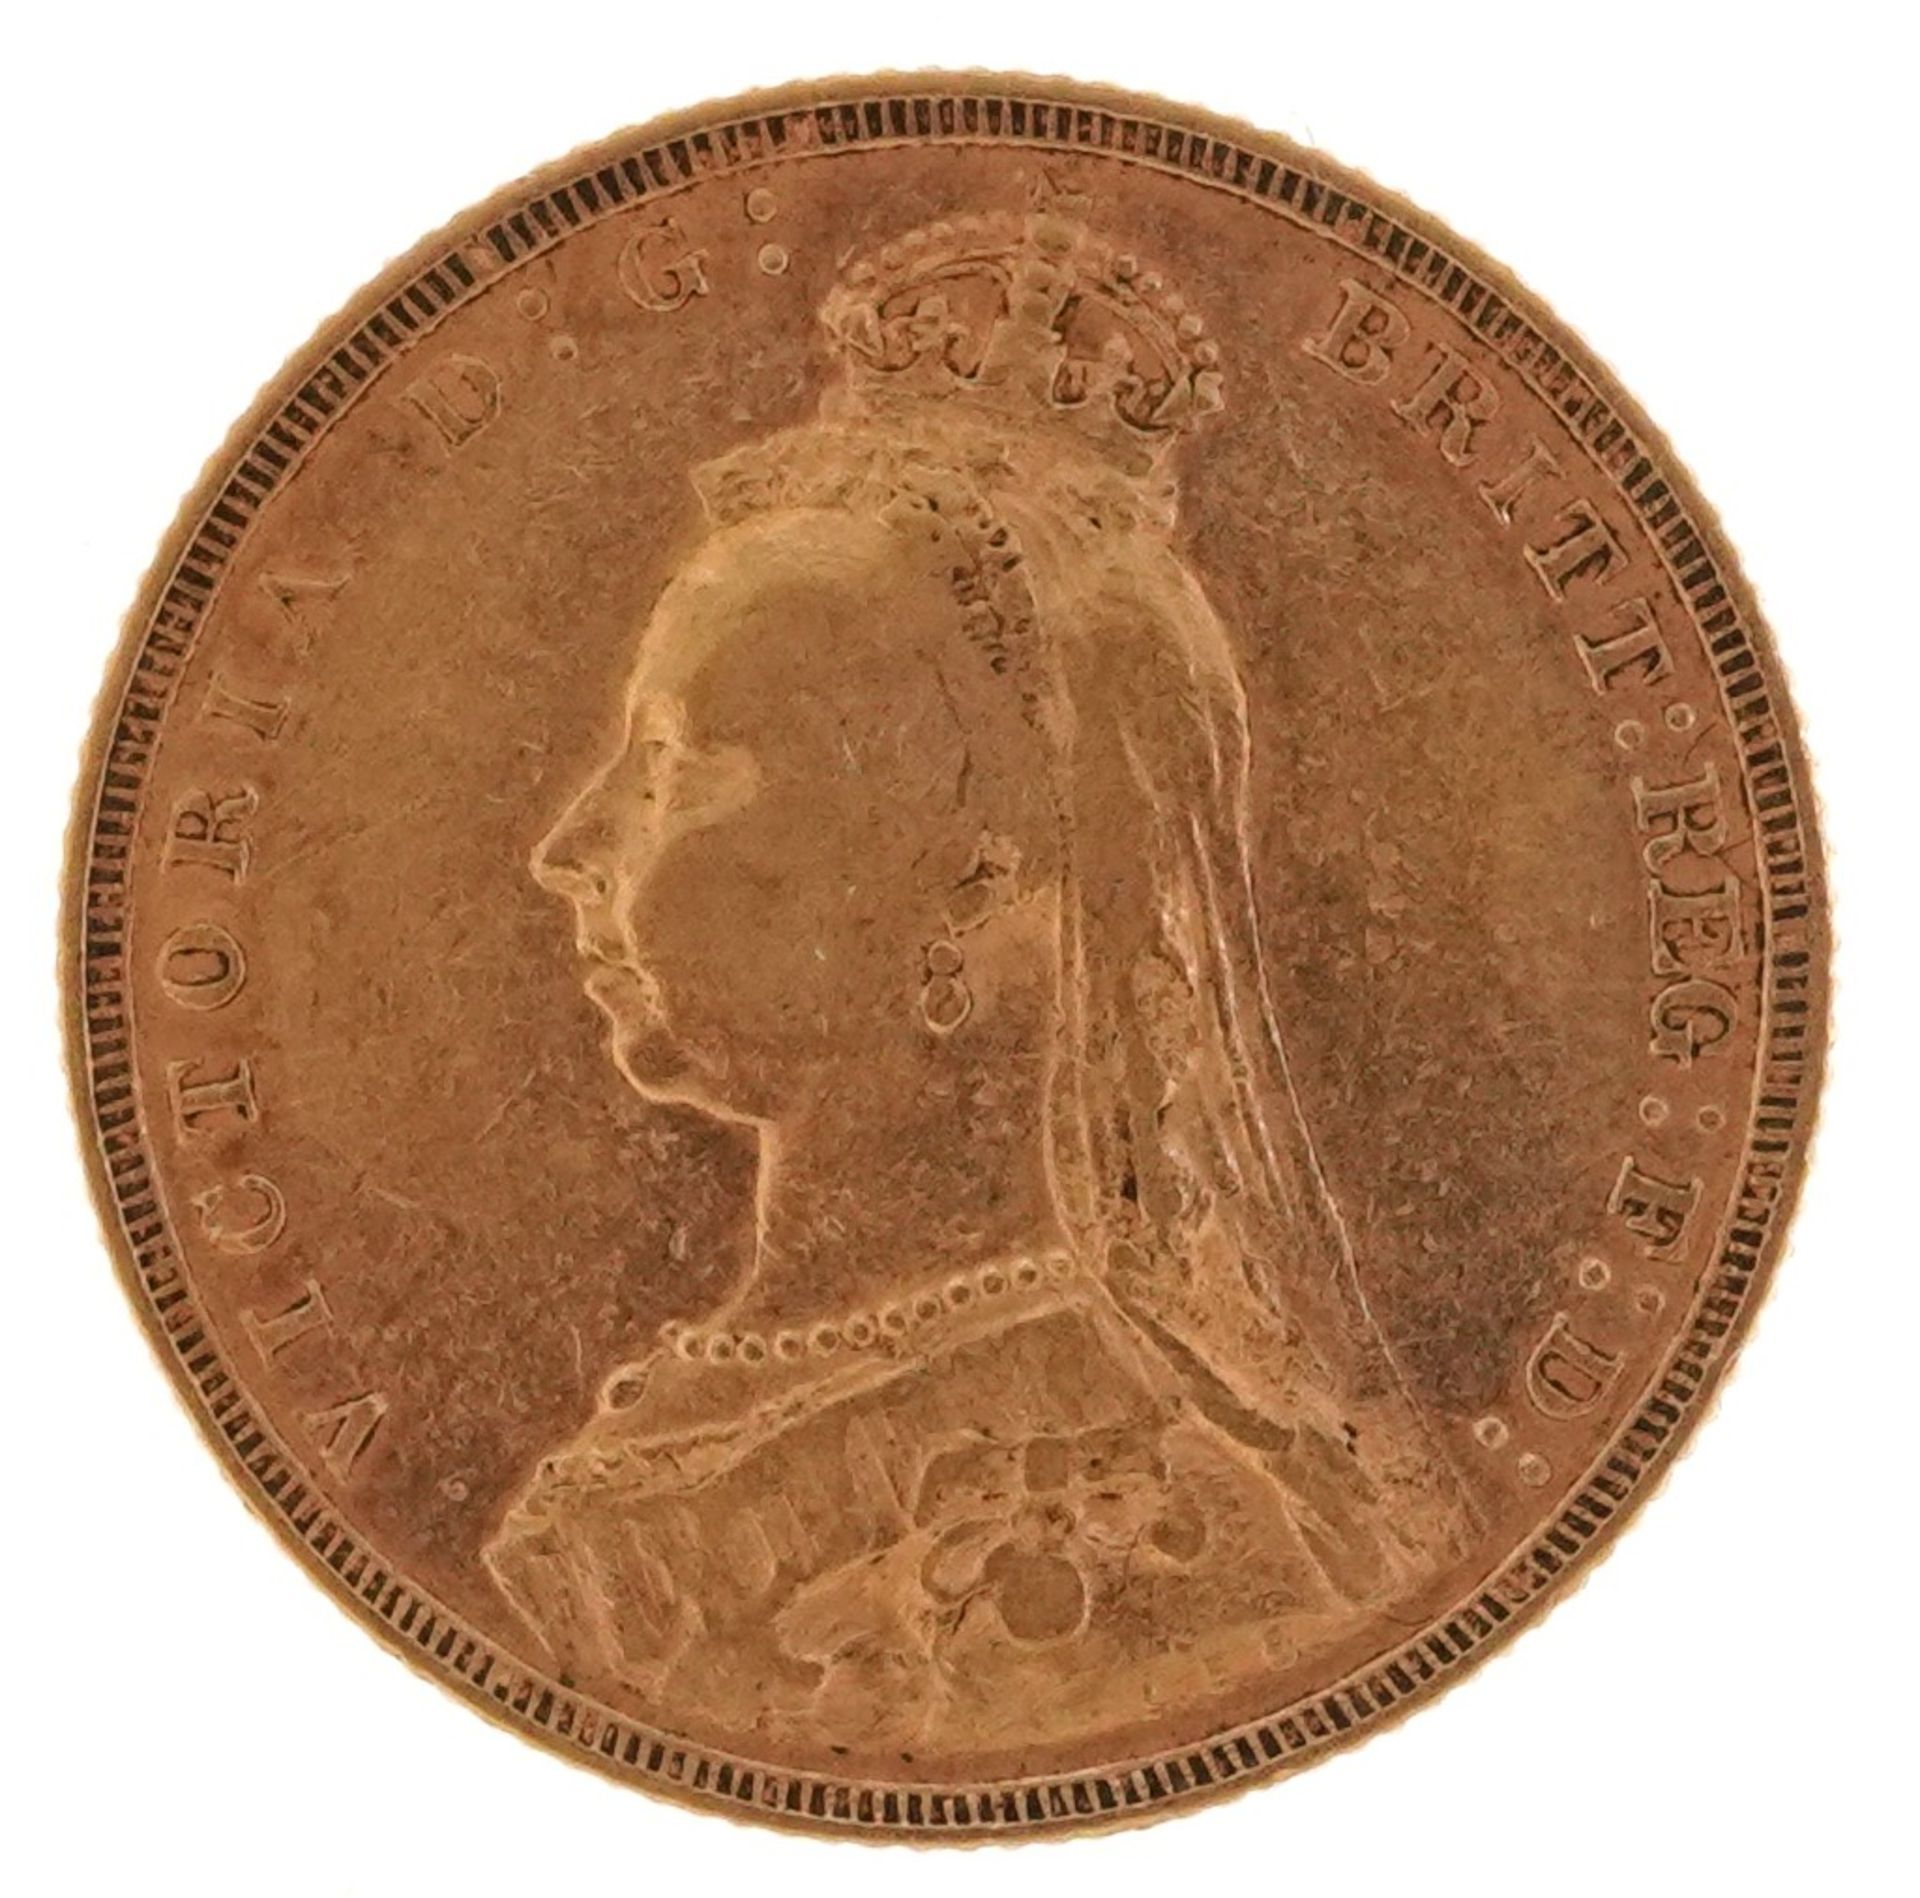 Queen Victoria Jubilee Head 1889 gold sovereign - Bild 2 aus 3